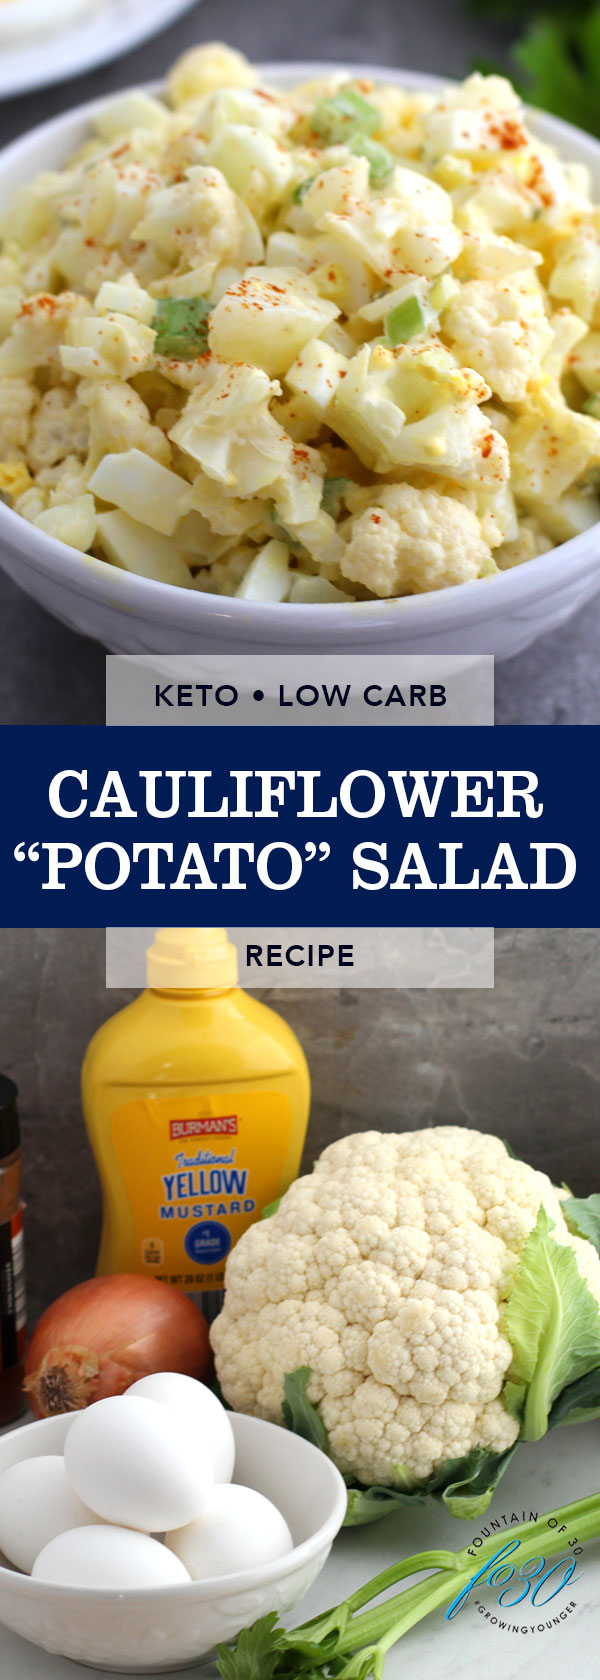 low carb cauliflower potato salad fountainof30